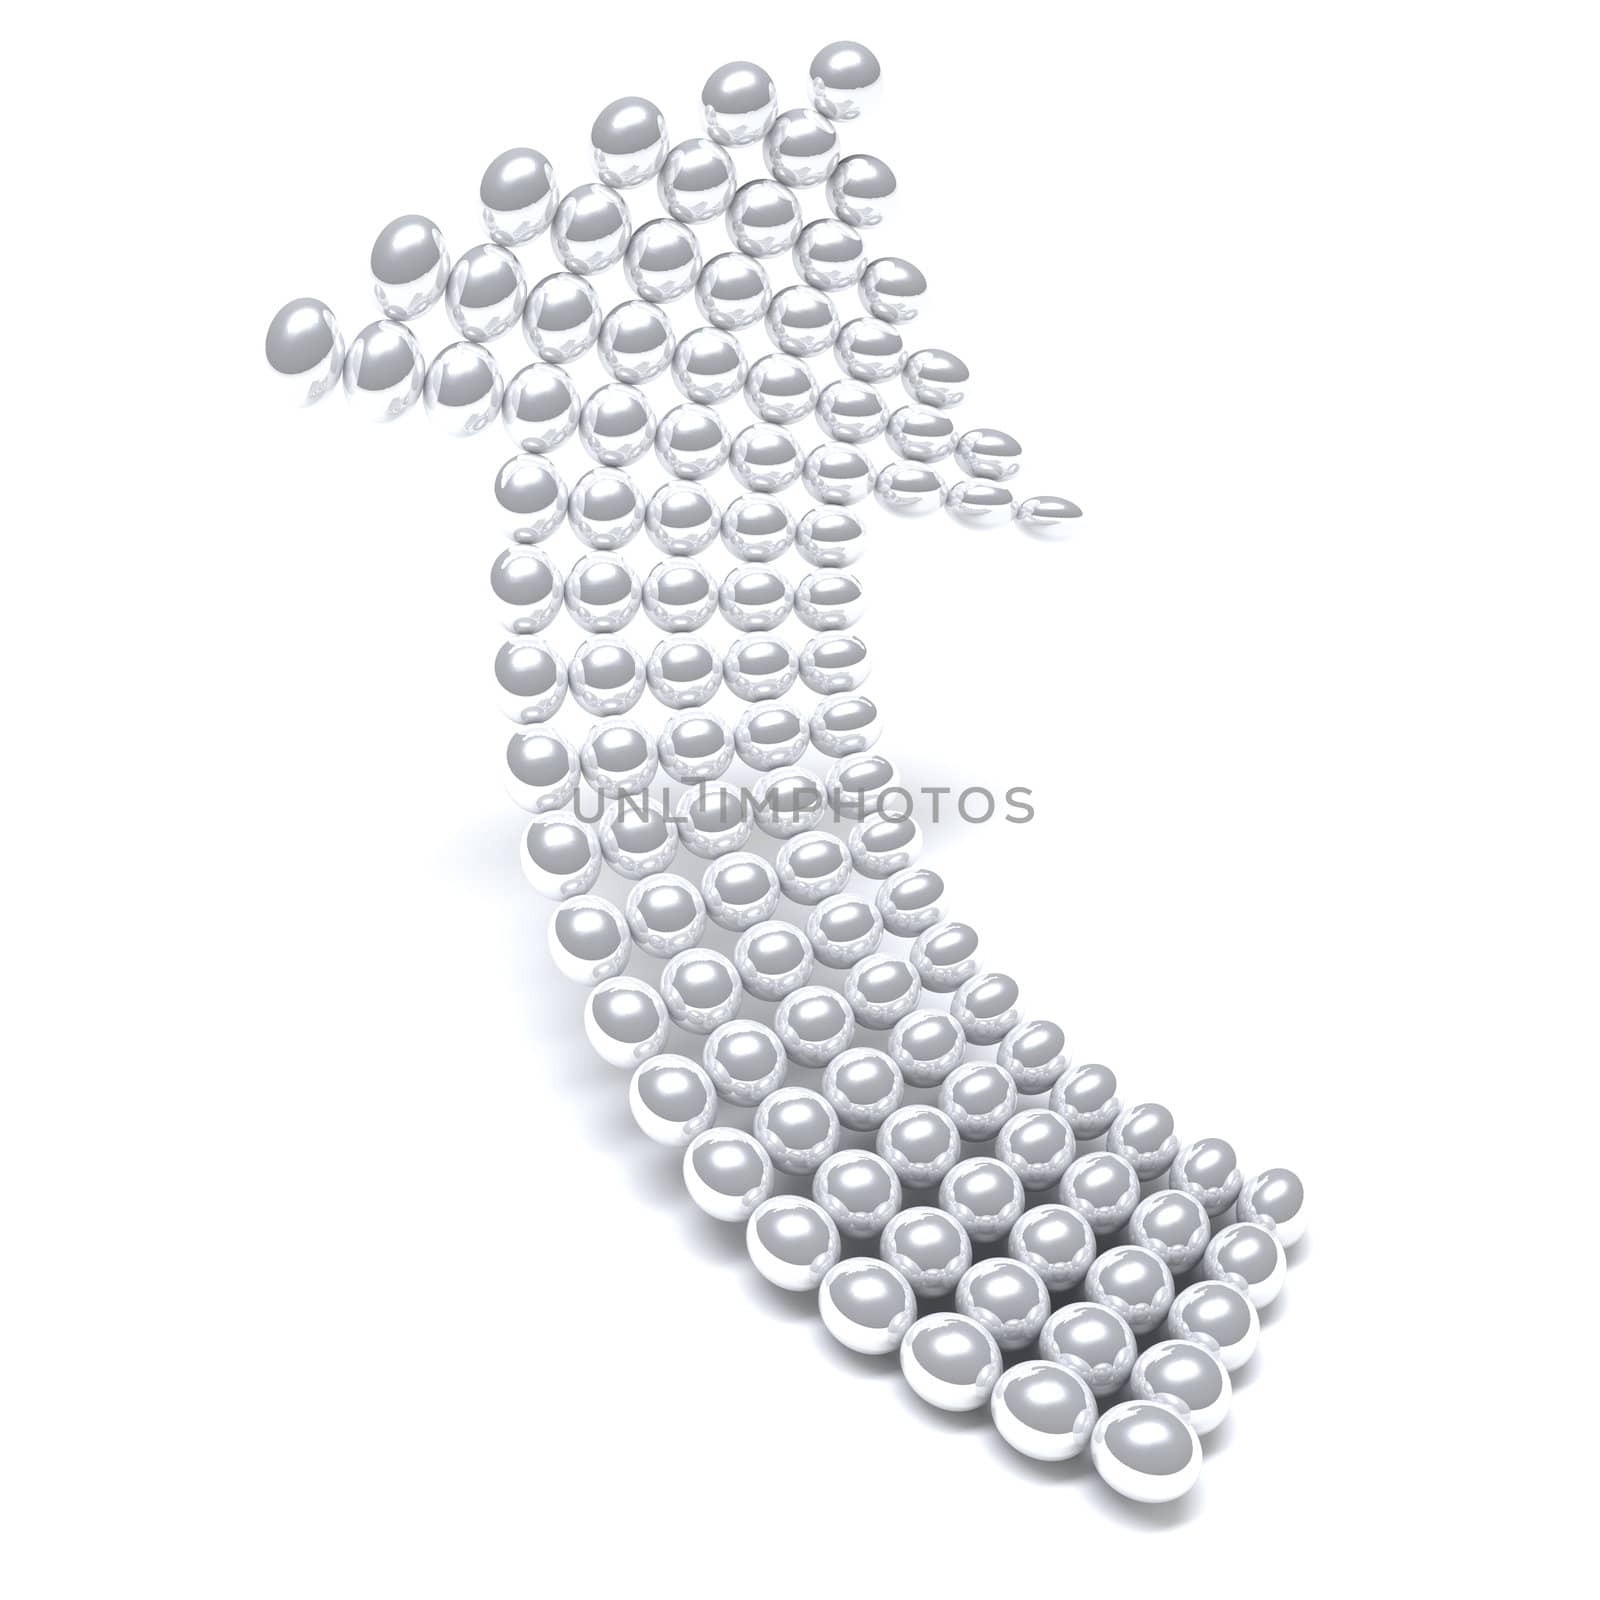 Grey arrow consisting of metal balls by Serp